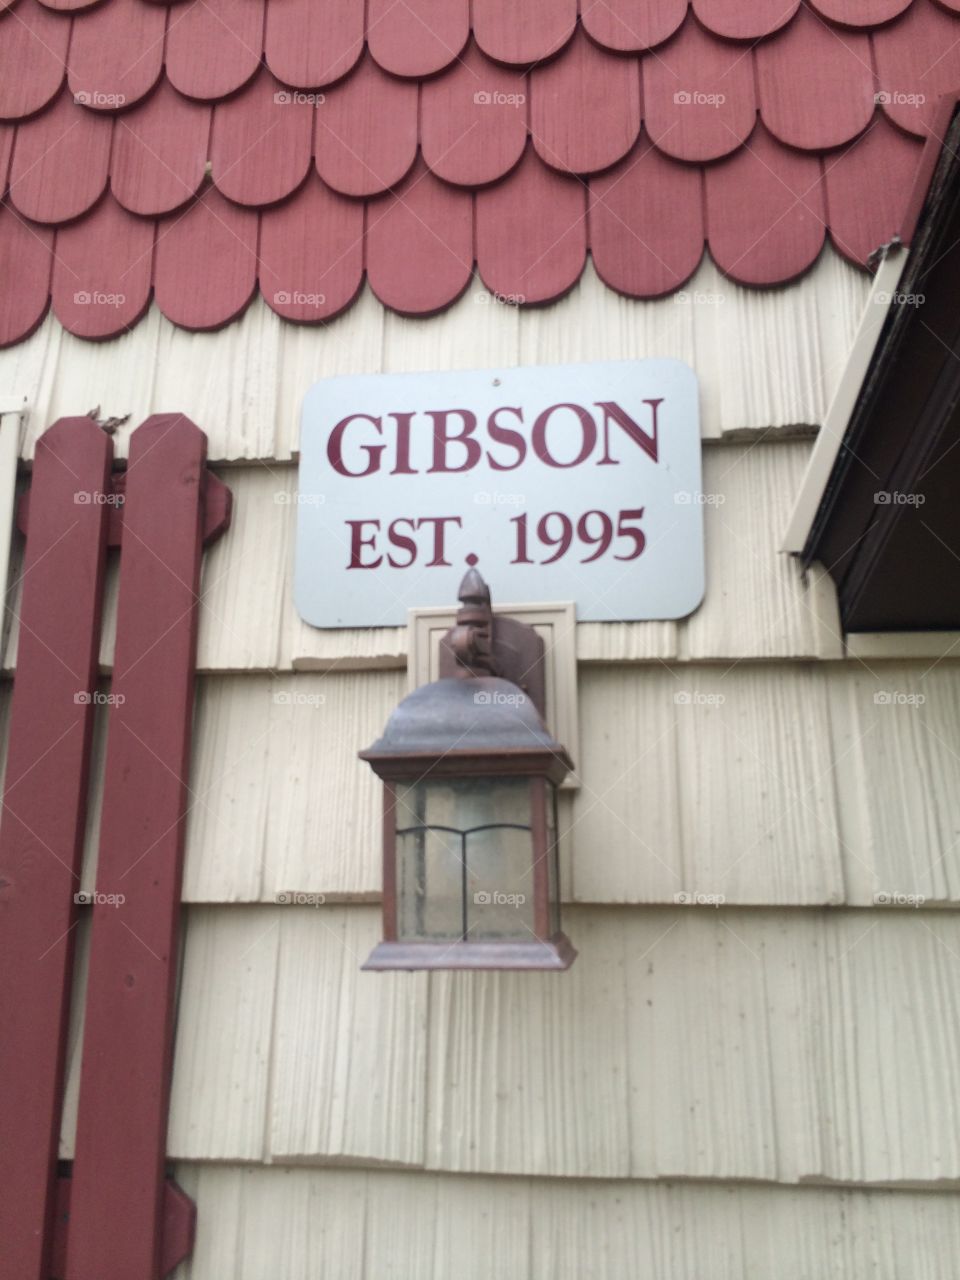 Gibson family home decor